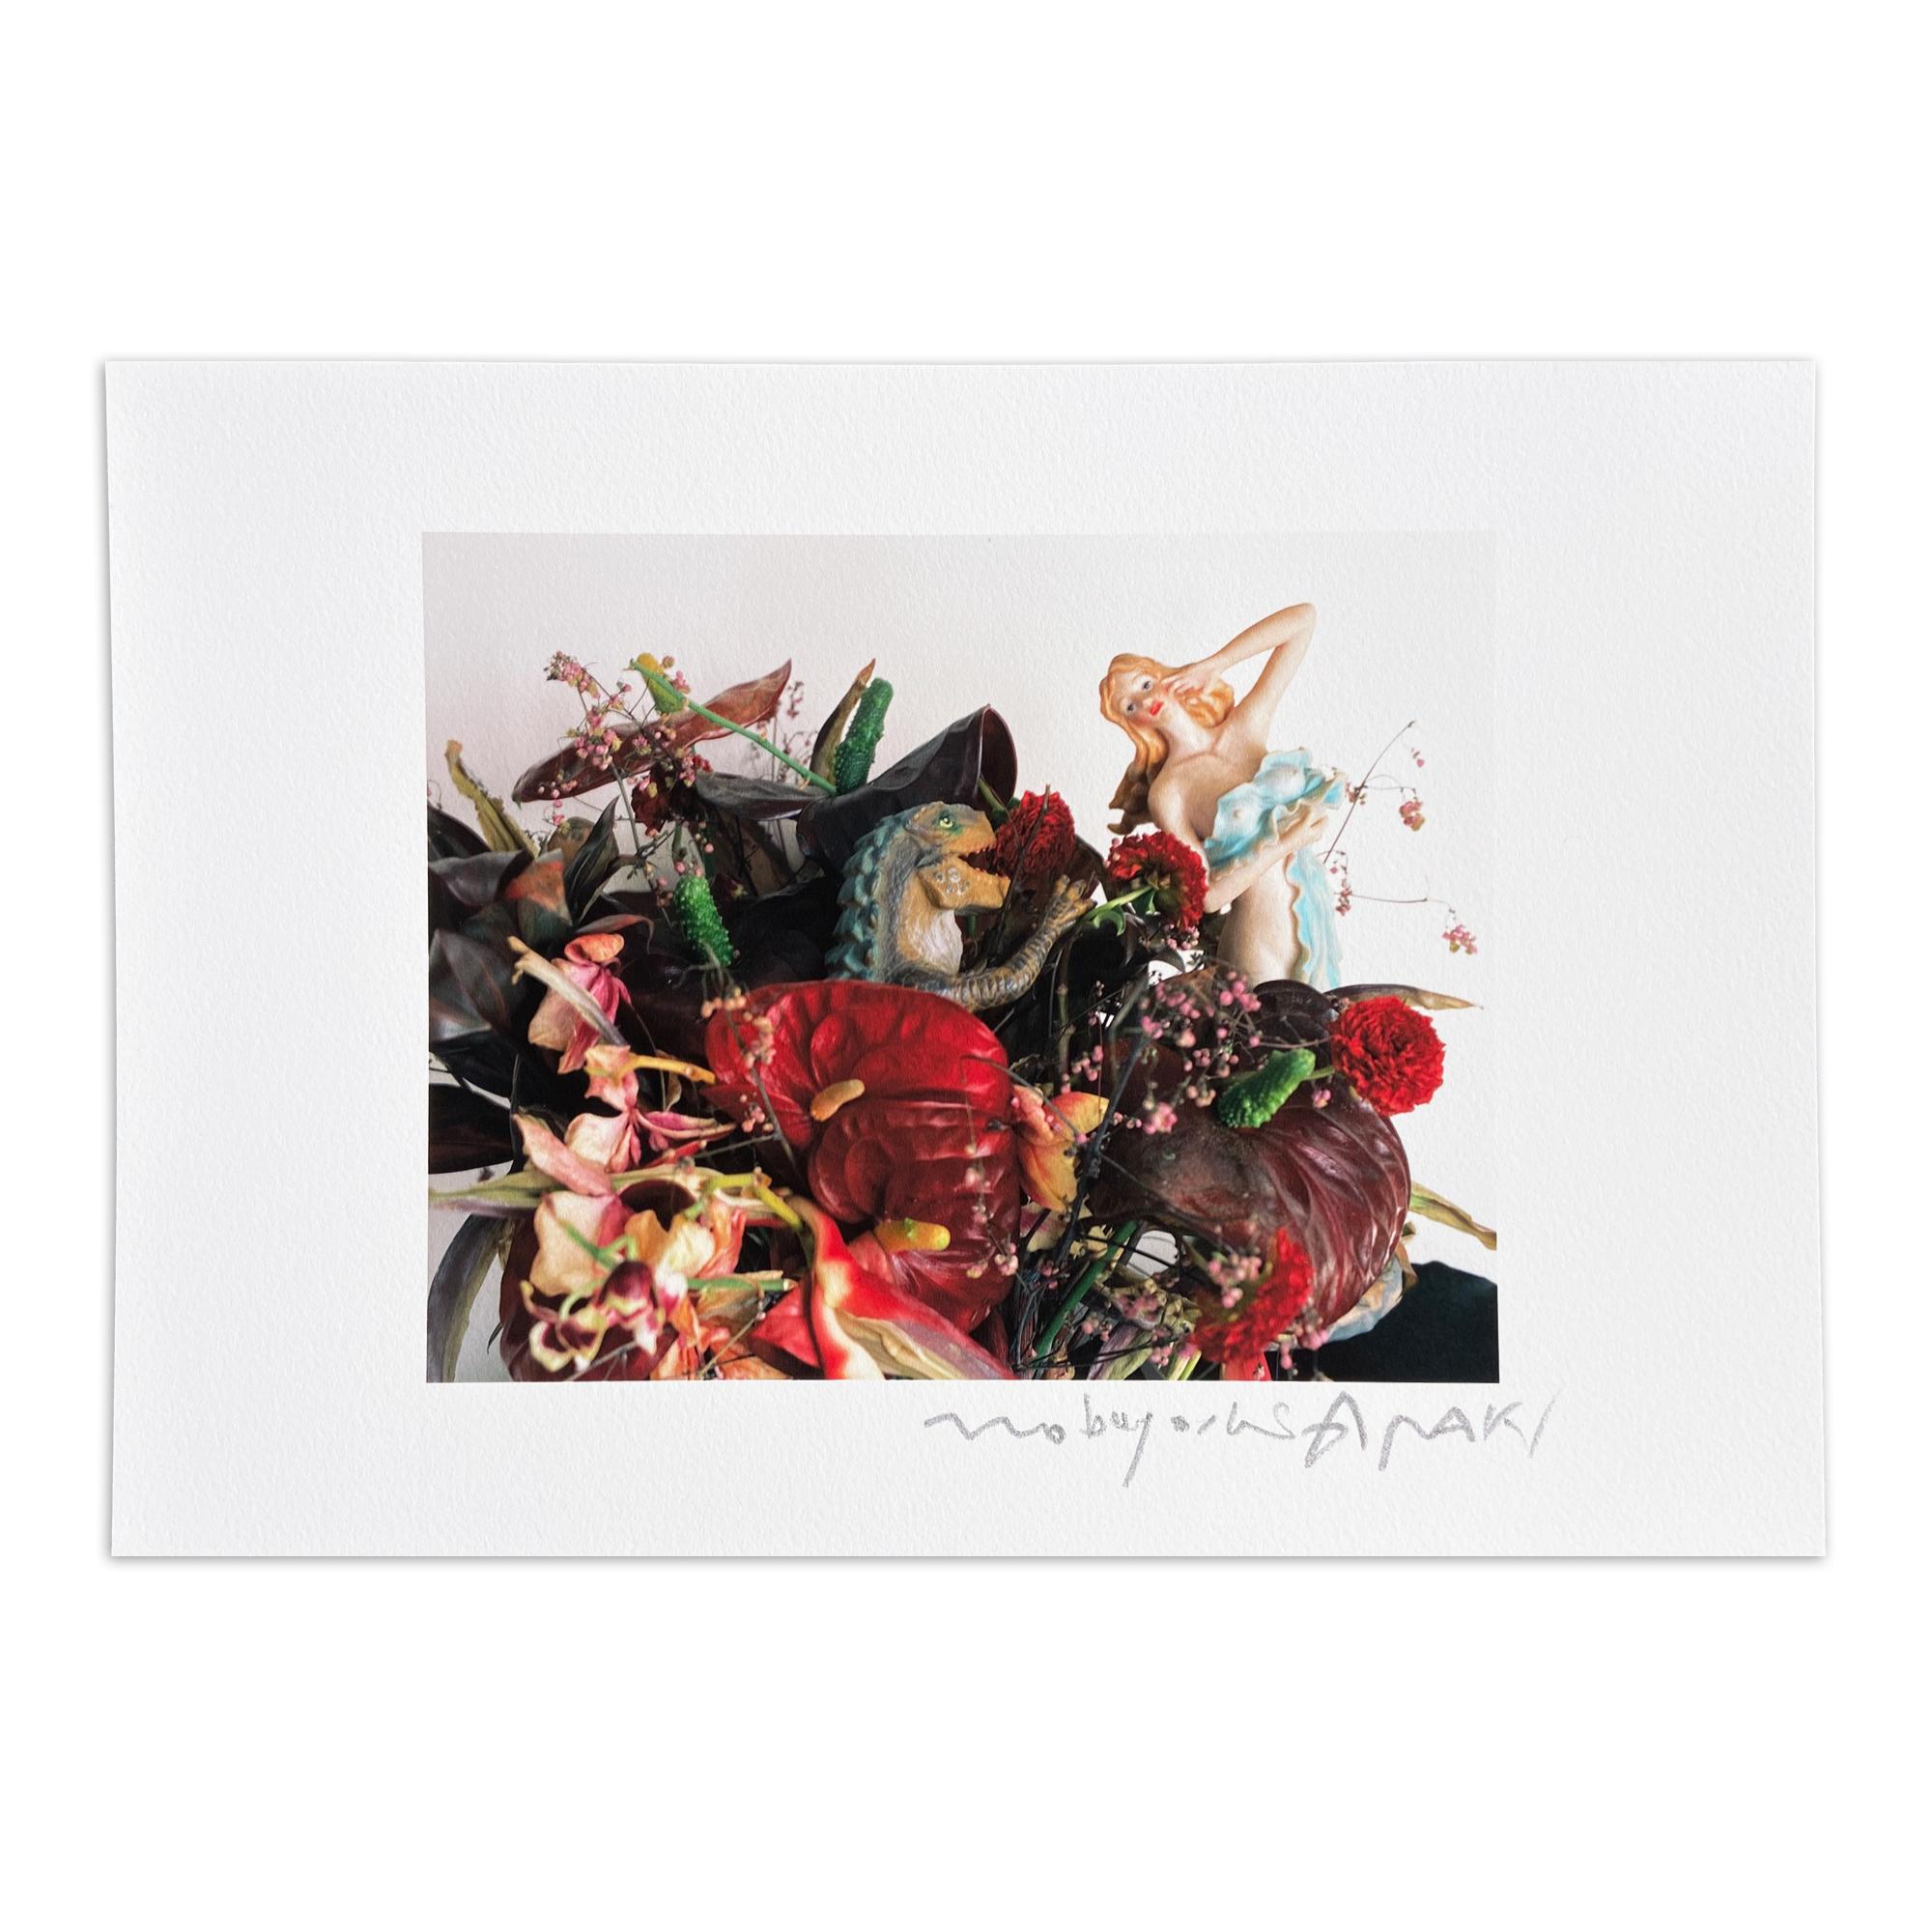 Nobuyoshi Araki Color Photograph - Flower/Doll, Still Life, Contemporary Photography